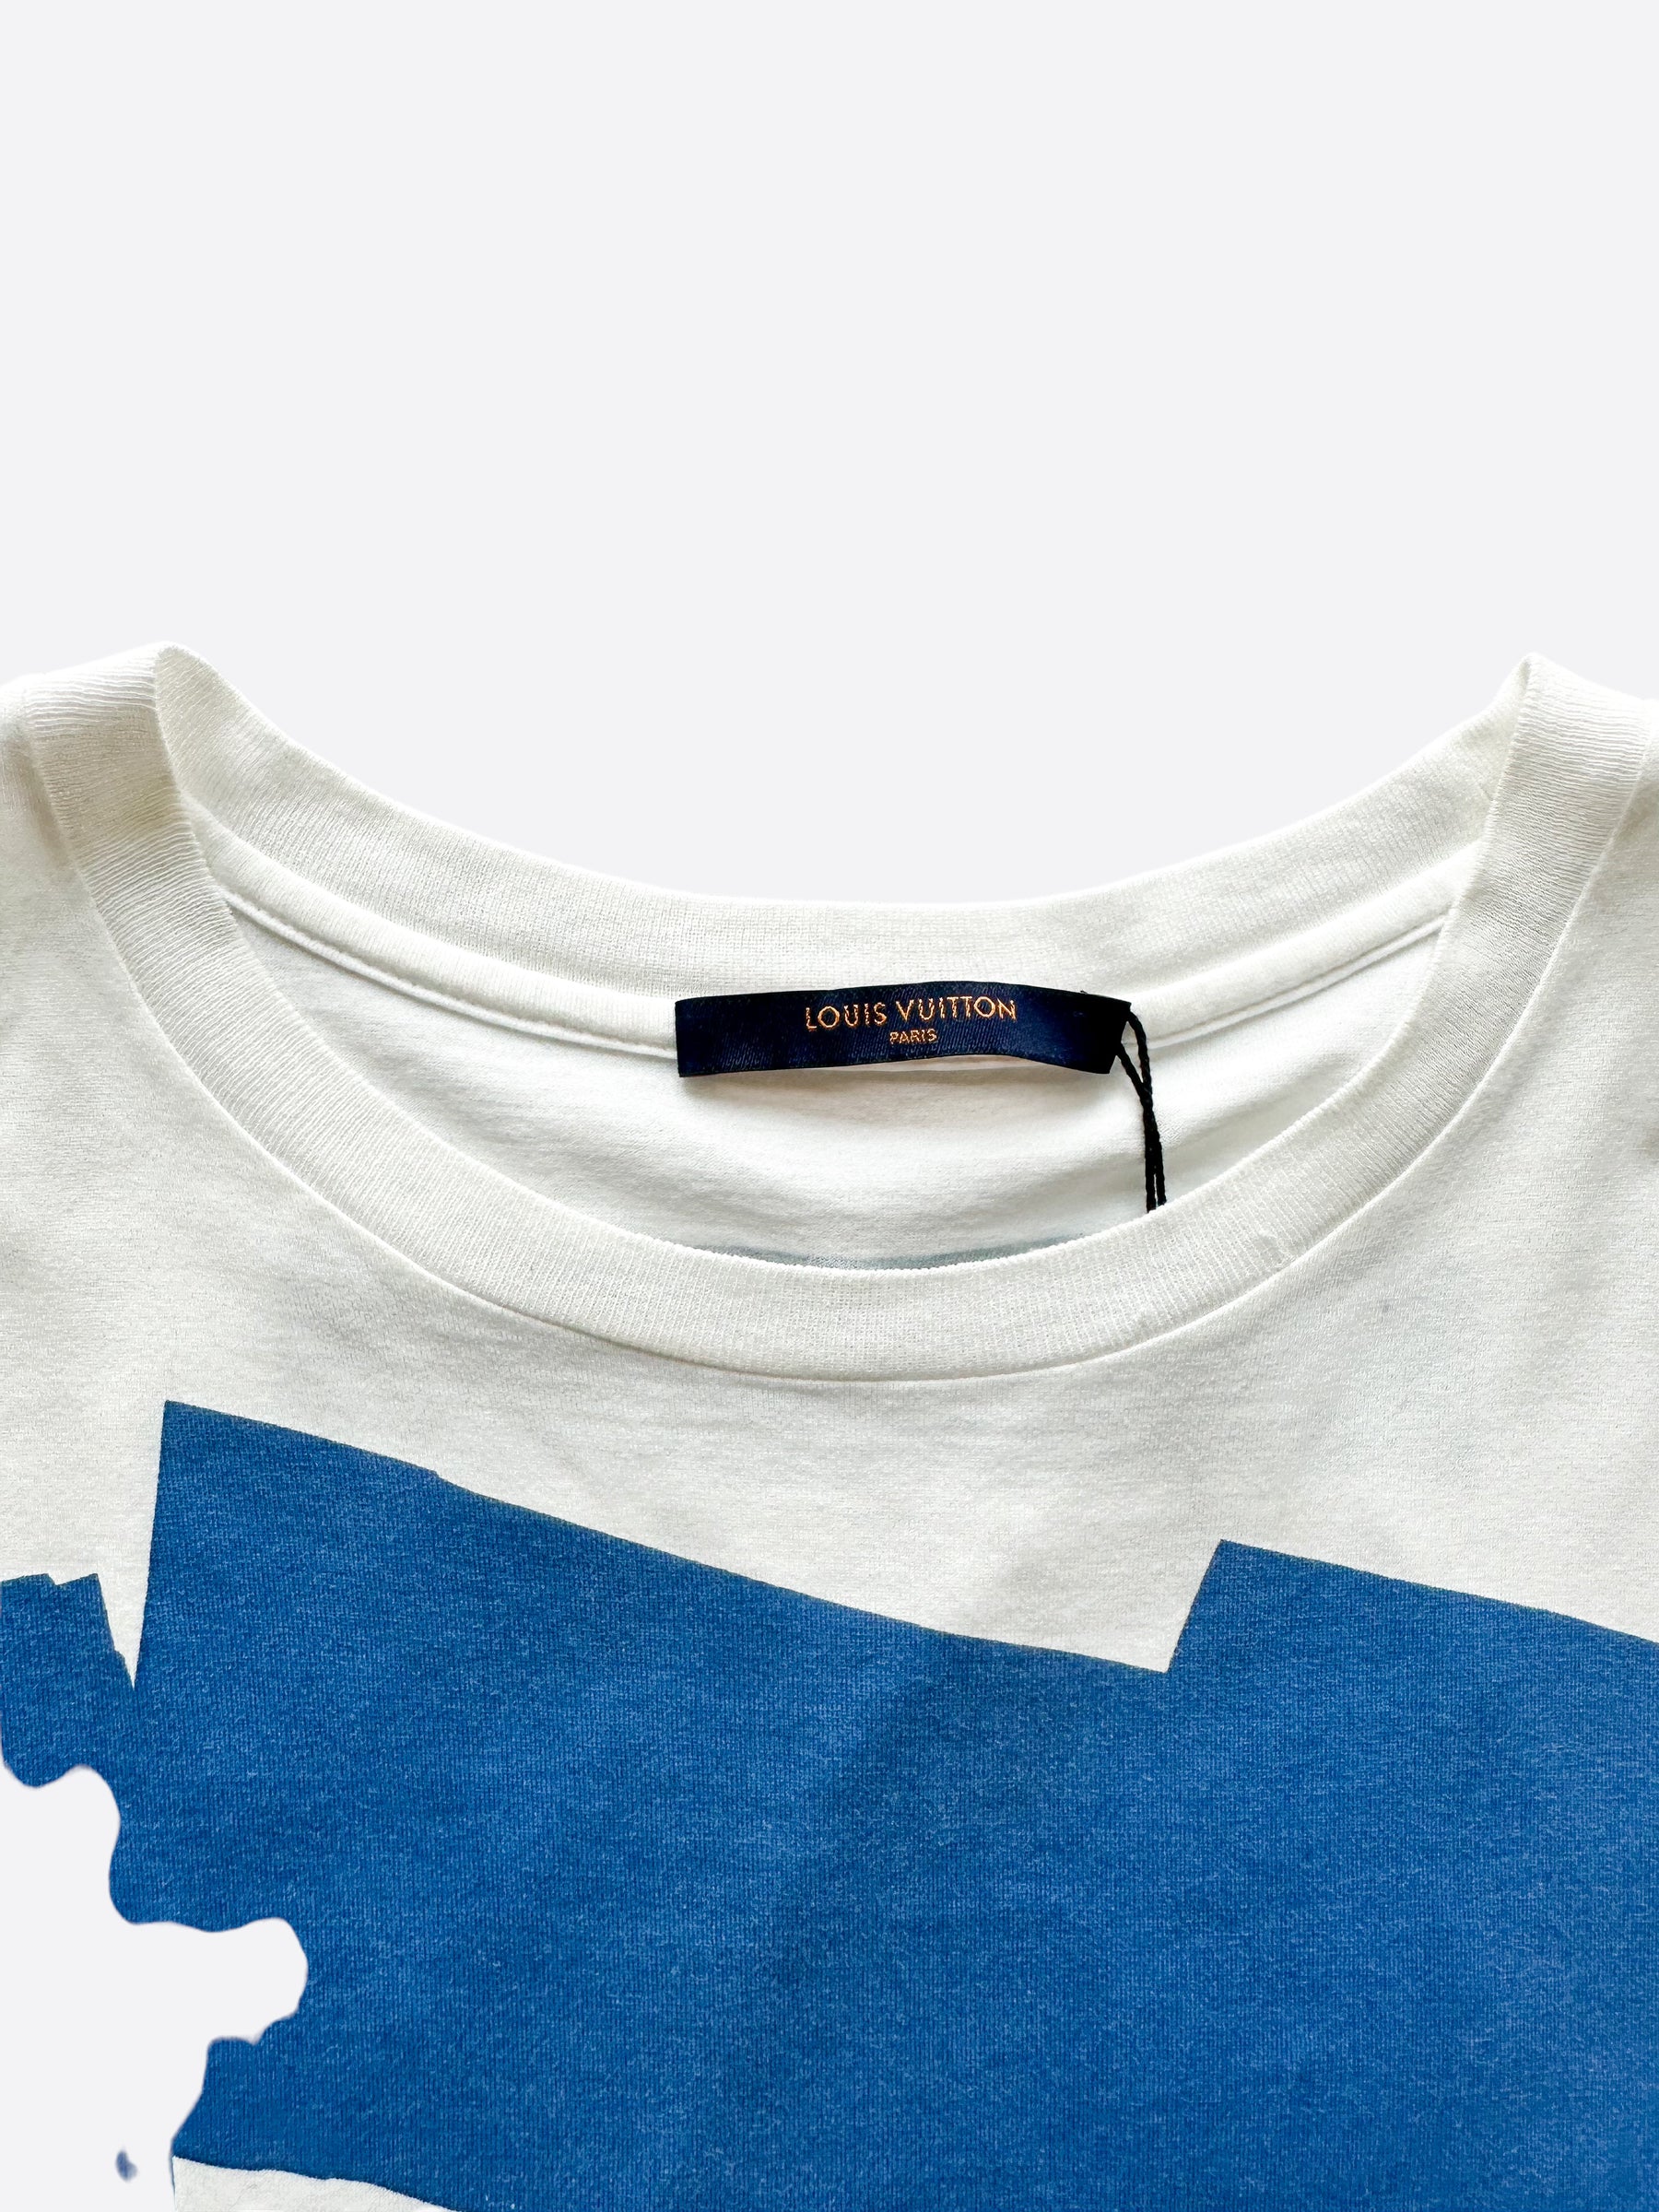 Louis Vuitton Blue Graphic Printed Cotton Crewneck T-Shirt M Louis